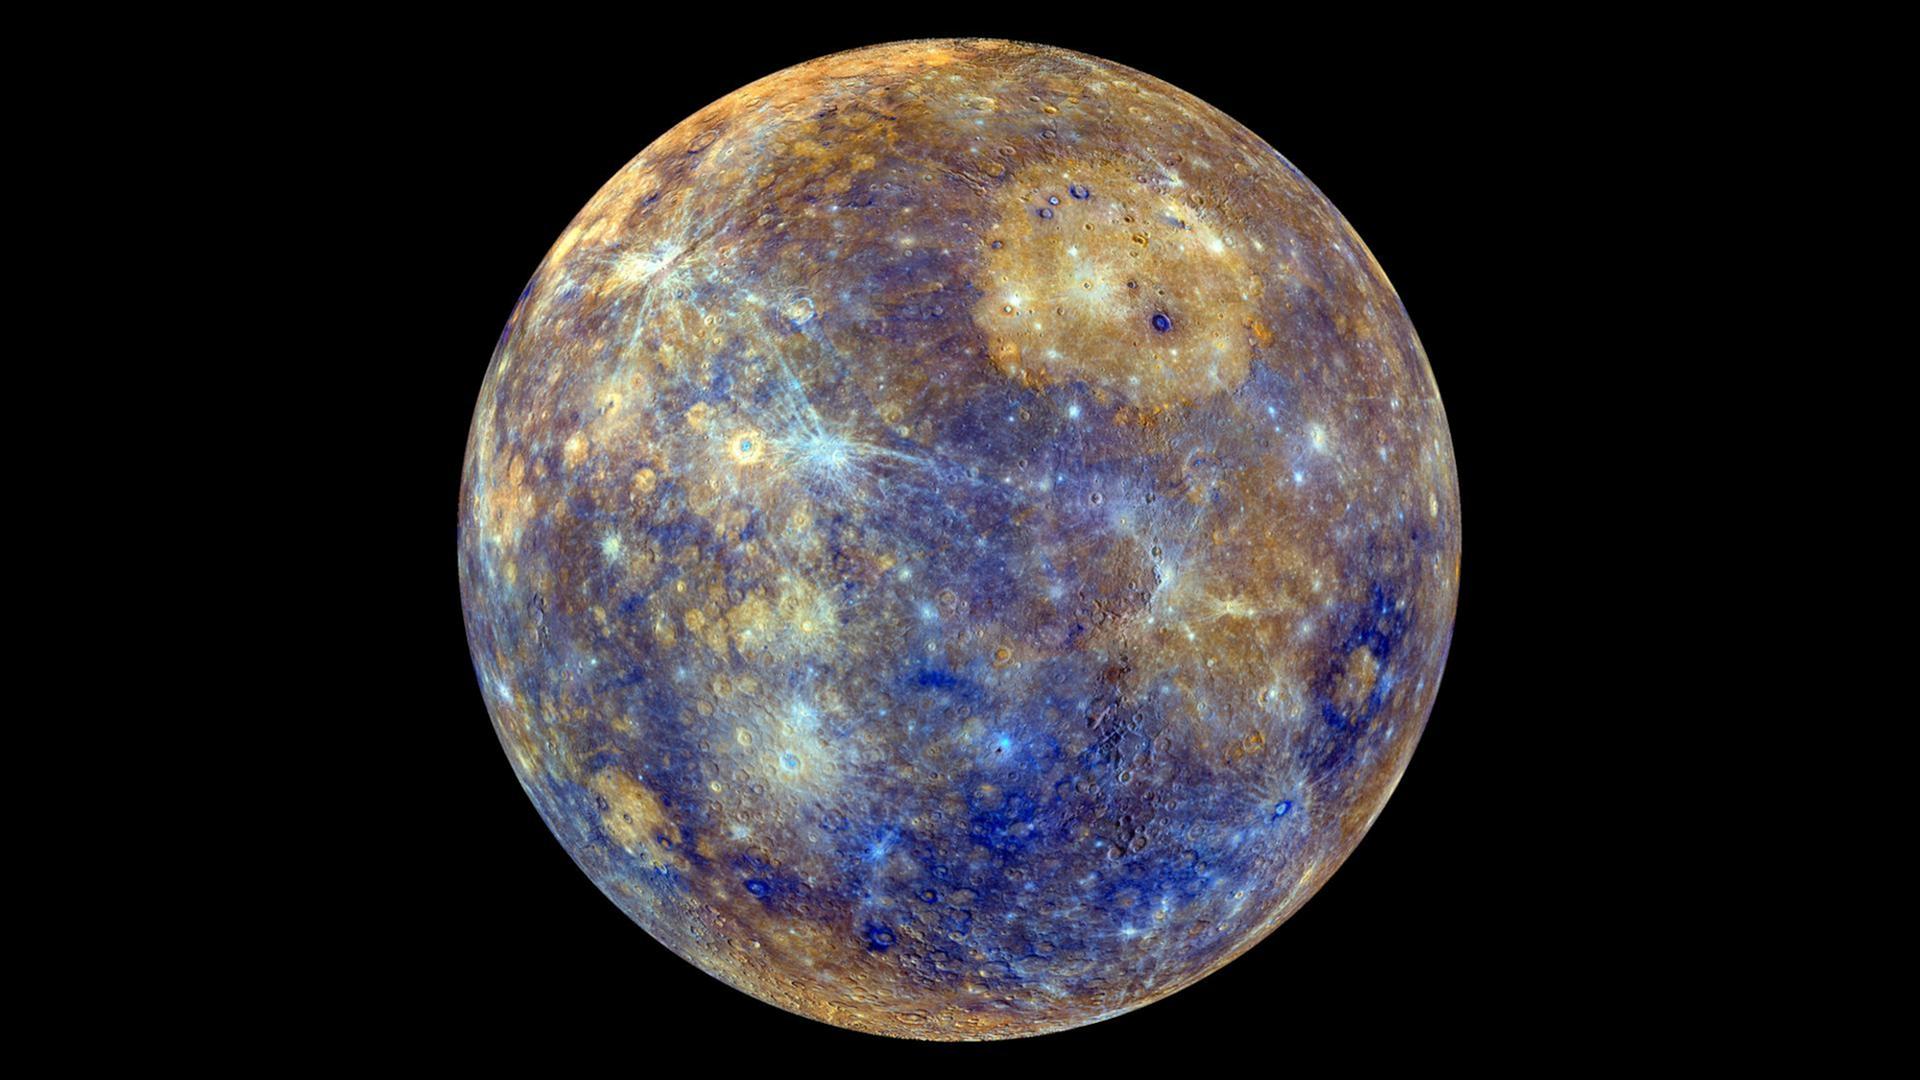 Raumsonden-Fotografie des Planeten Merkur zeigt goldfarbene Gaswolken über blauen Flächen

